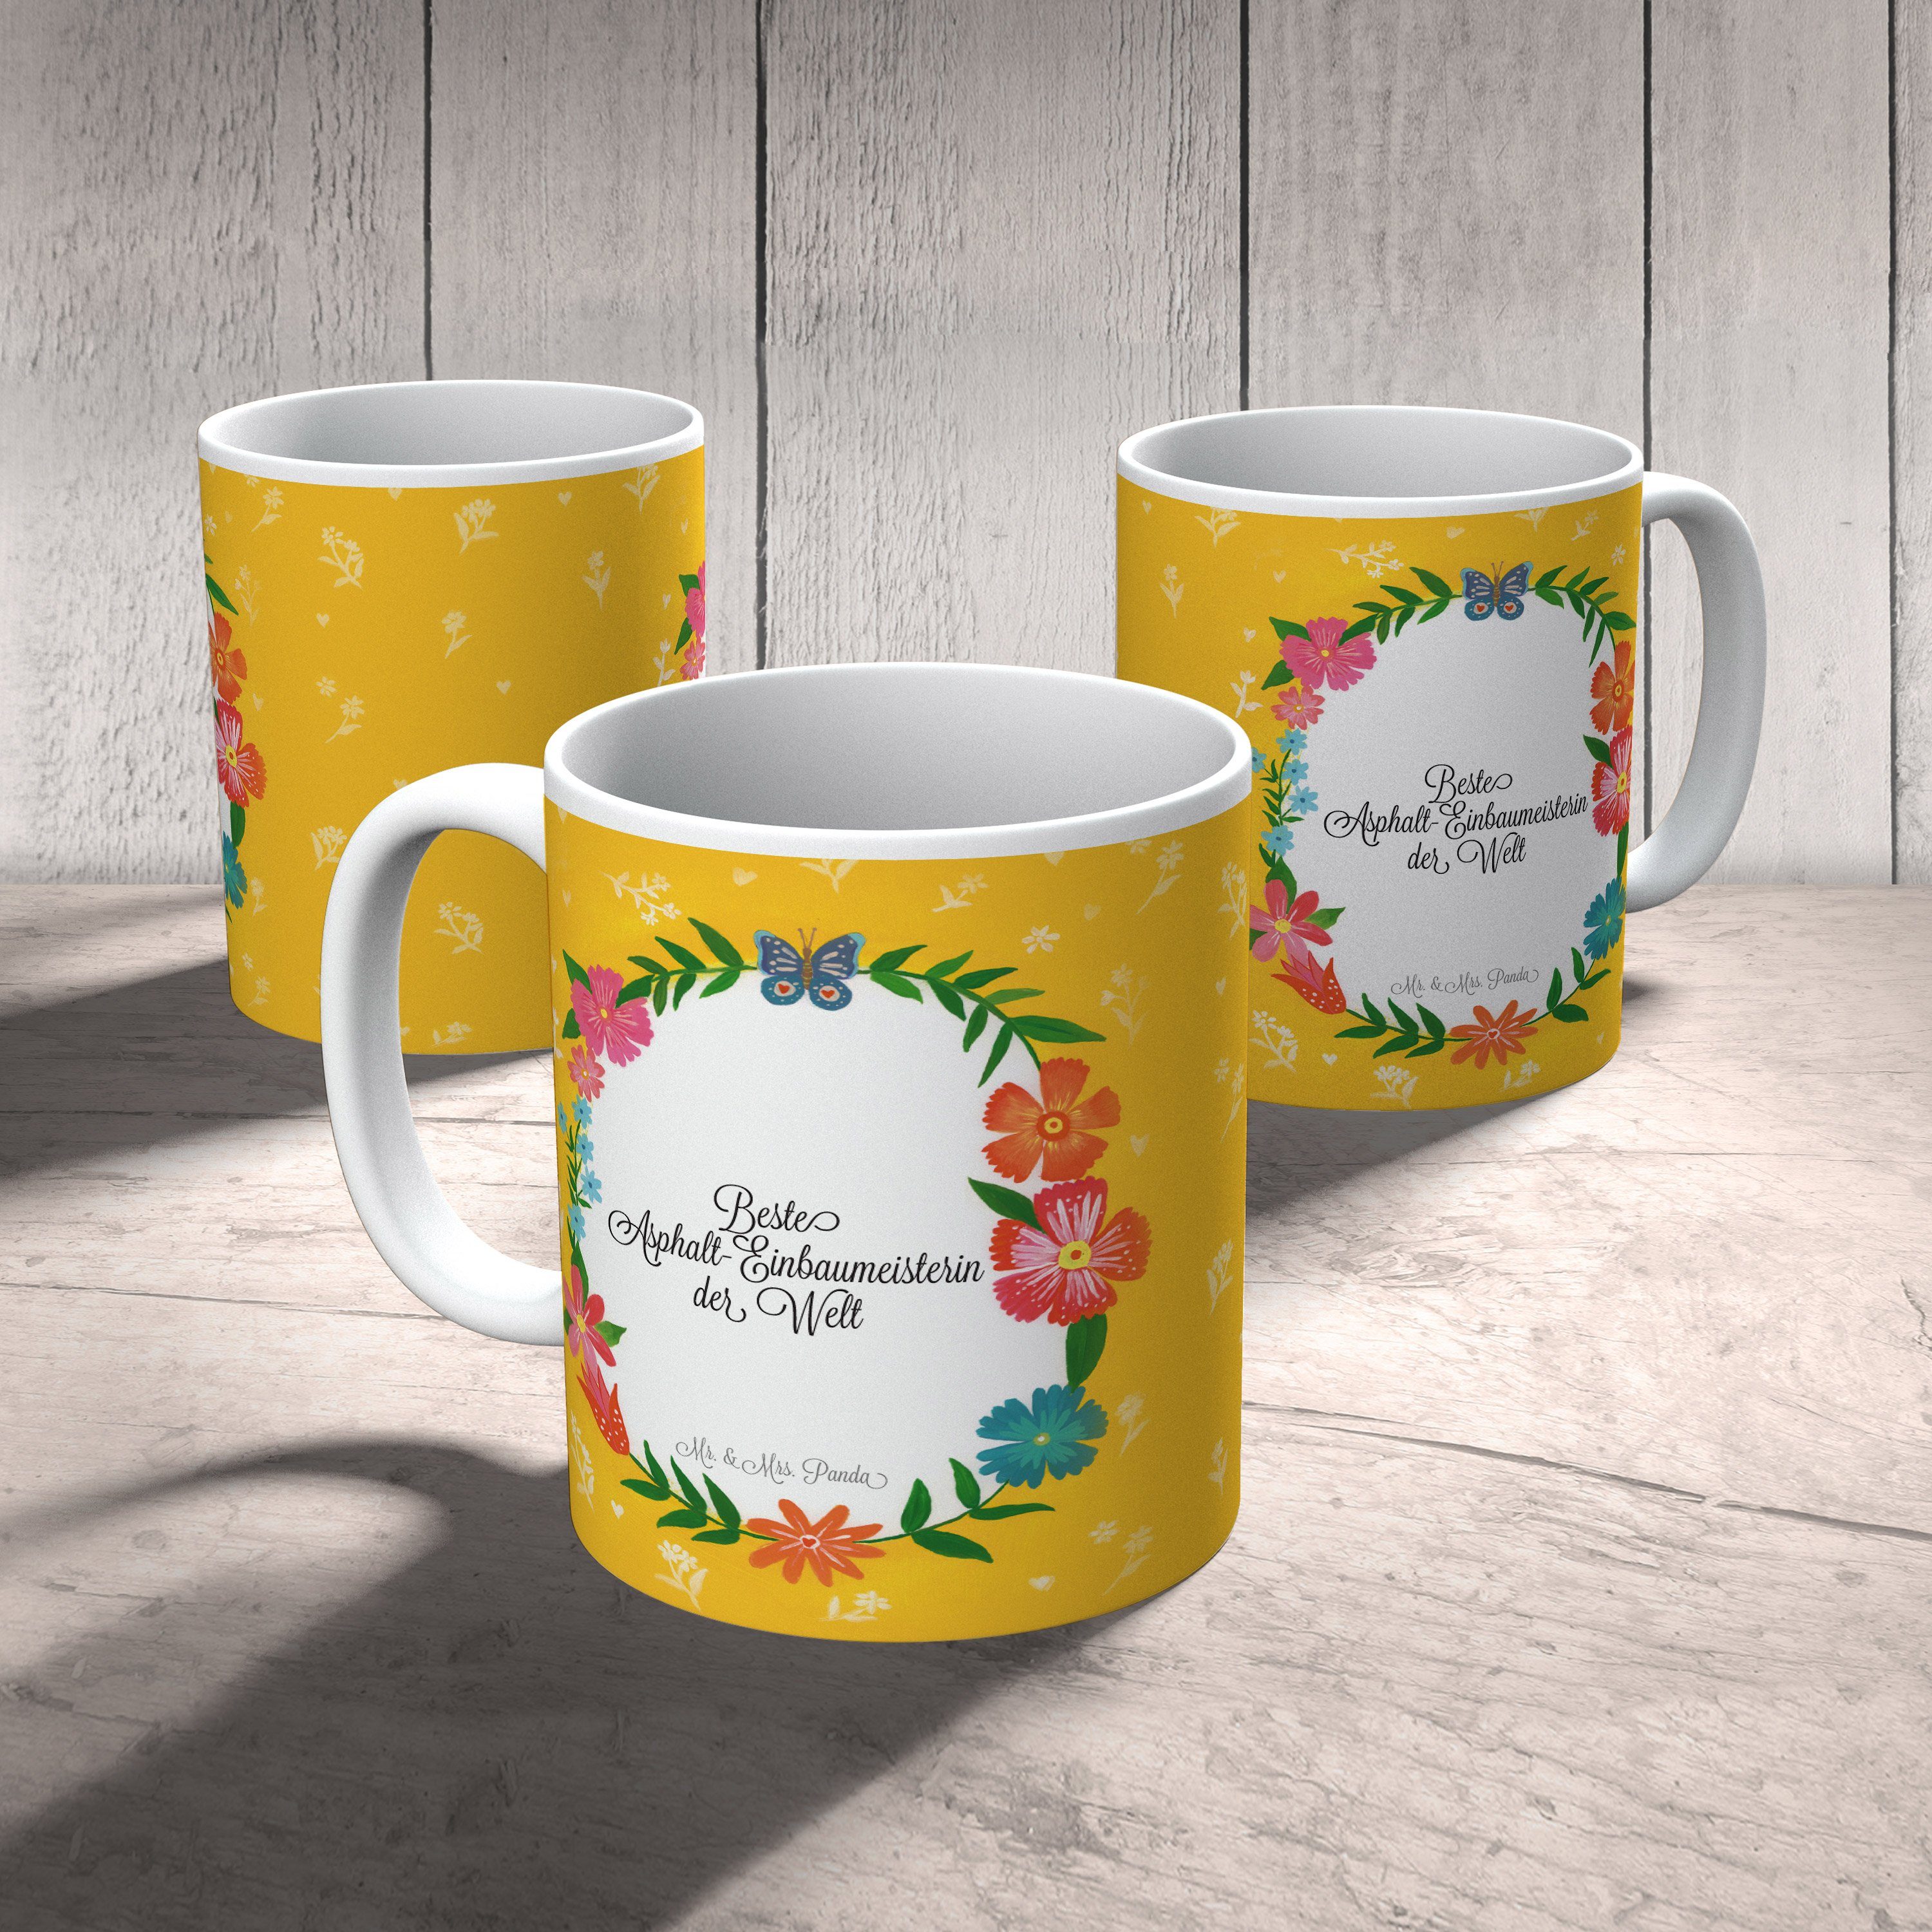 Geschenk, Sprüche, Teetasse, Tasse Keramik - & Abschied, Panda Tasse Mrs. Mr. Asphalt-Einbaumeisterin